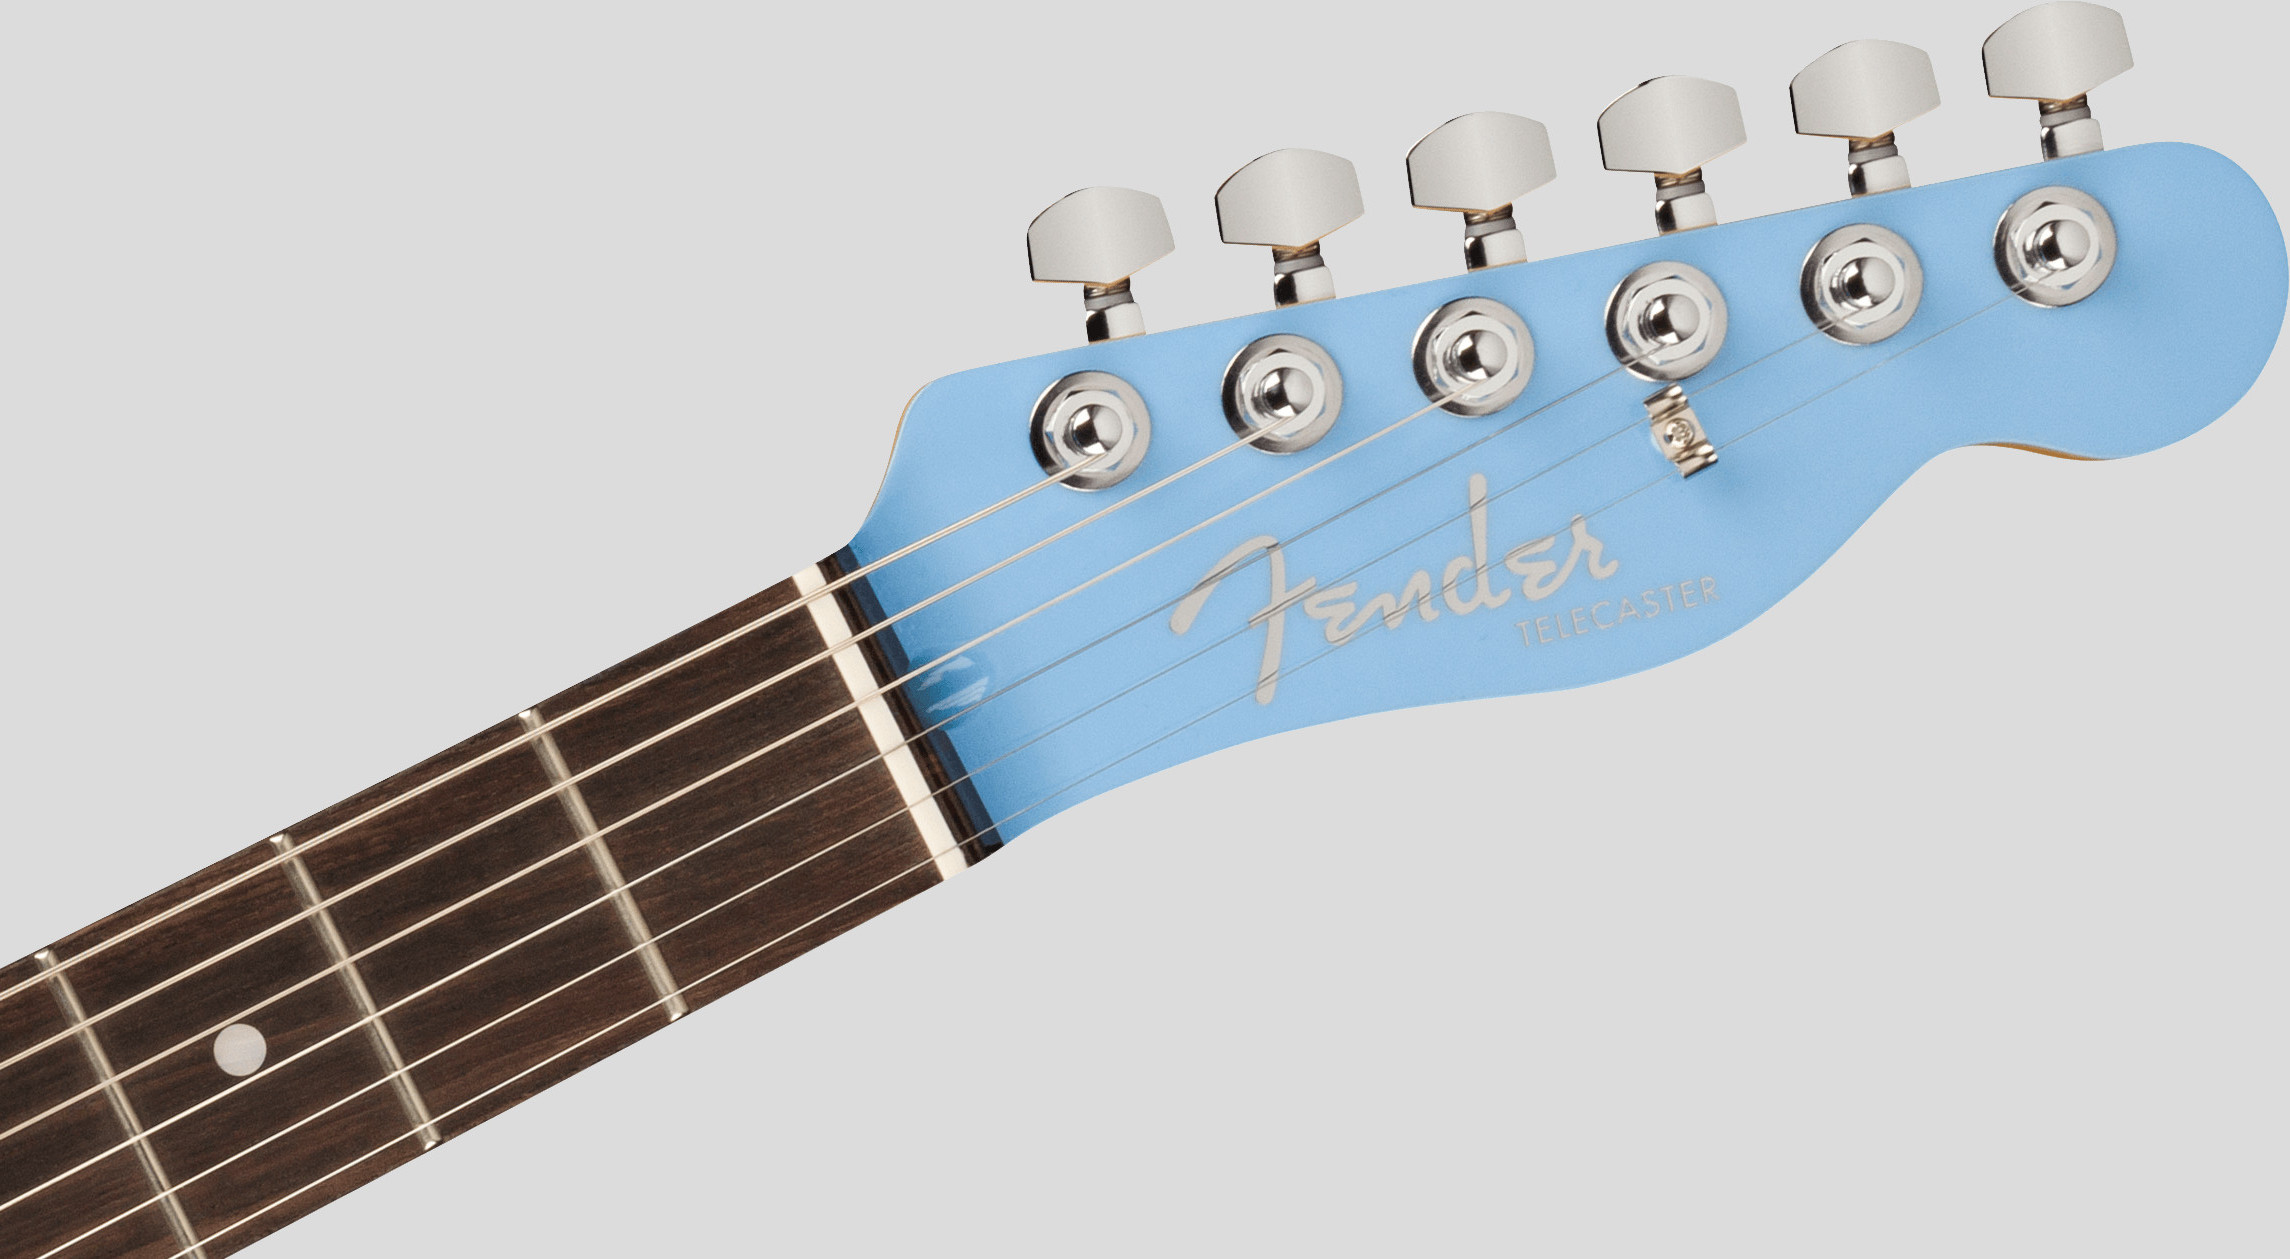 Fender Aerodyne Special Telecaster California Blue 5